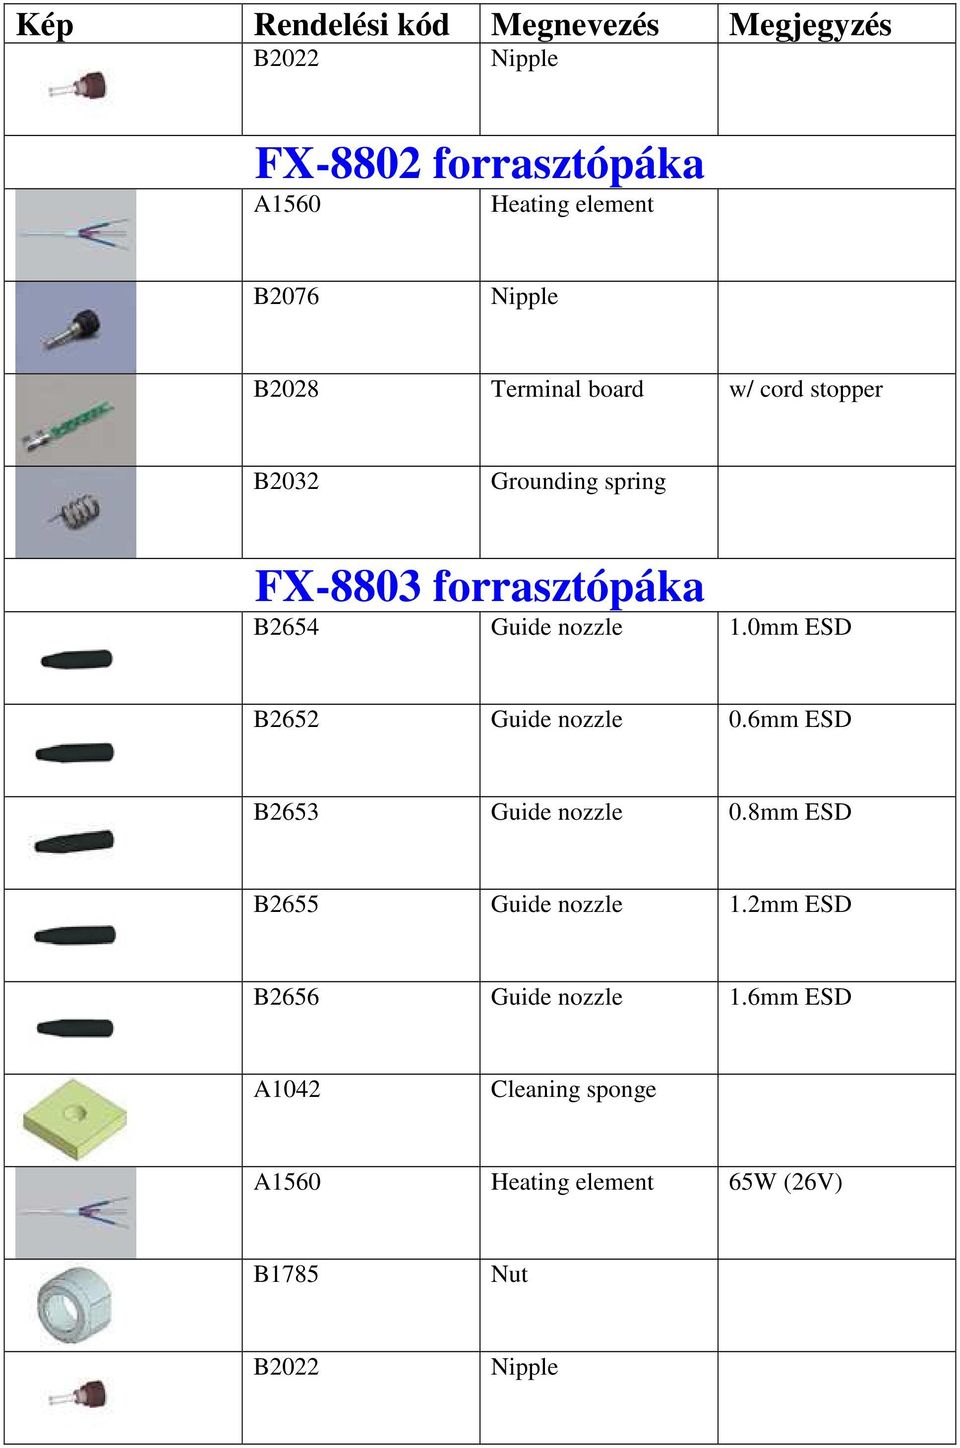 0mm ESD B2652 Guide nozzle 0.6mm ESD B2653 Guide nozzle 0.8mm ESD B2655 Guide nozzle 1.